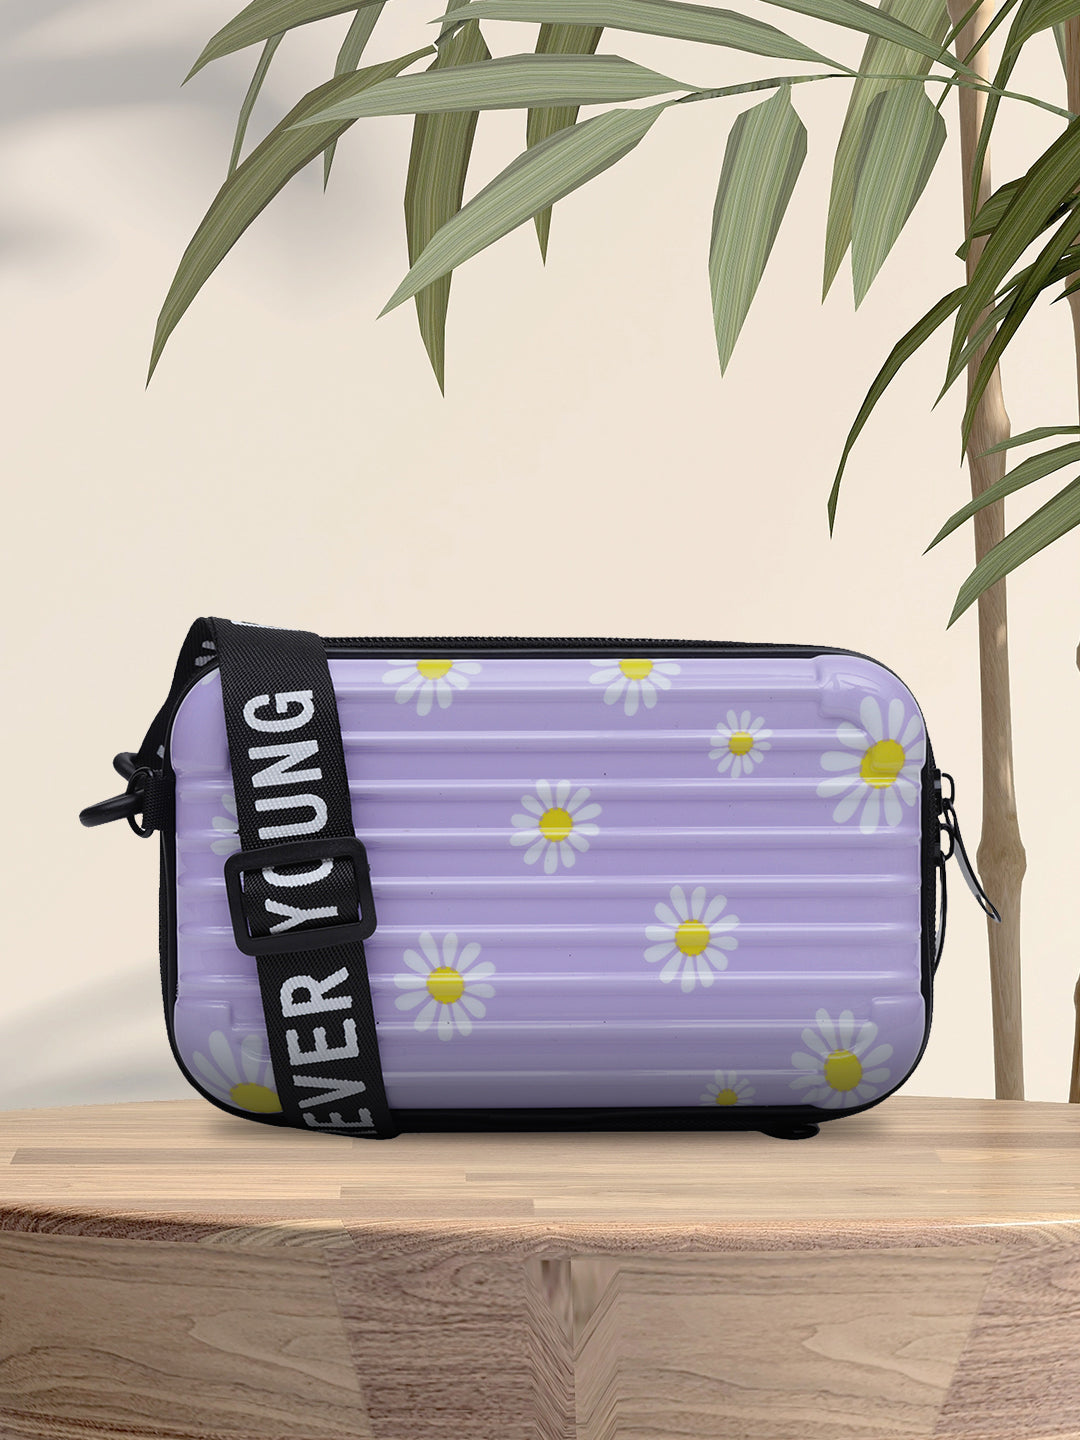 MINI WESST Purple Casual Solid Sling Bag(MWHB195PR)